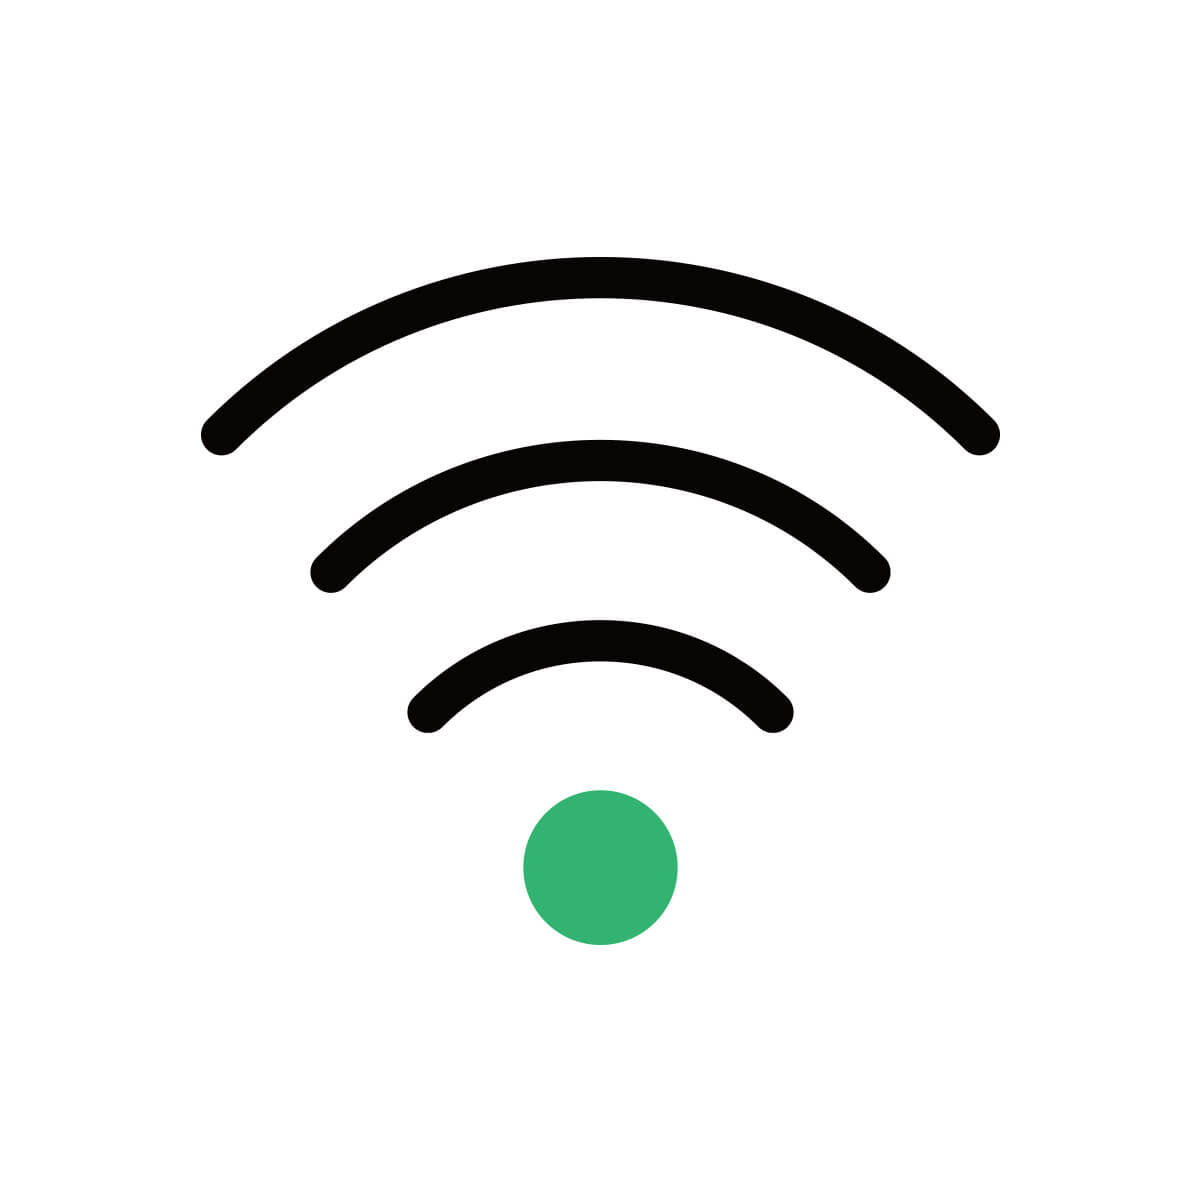 通信回線（3G / 4G / 5G / Wi-Fi）